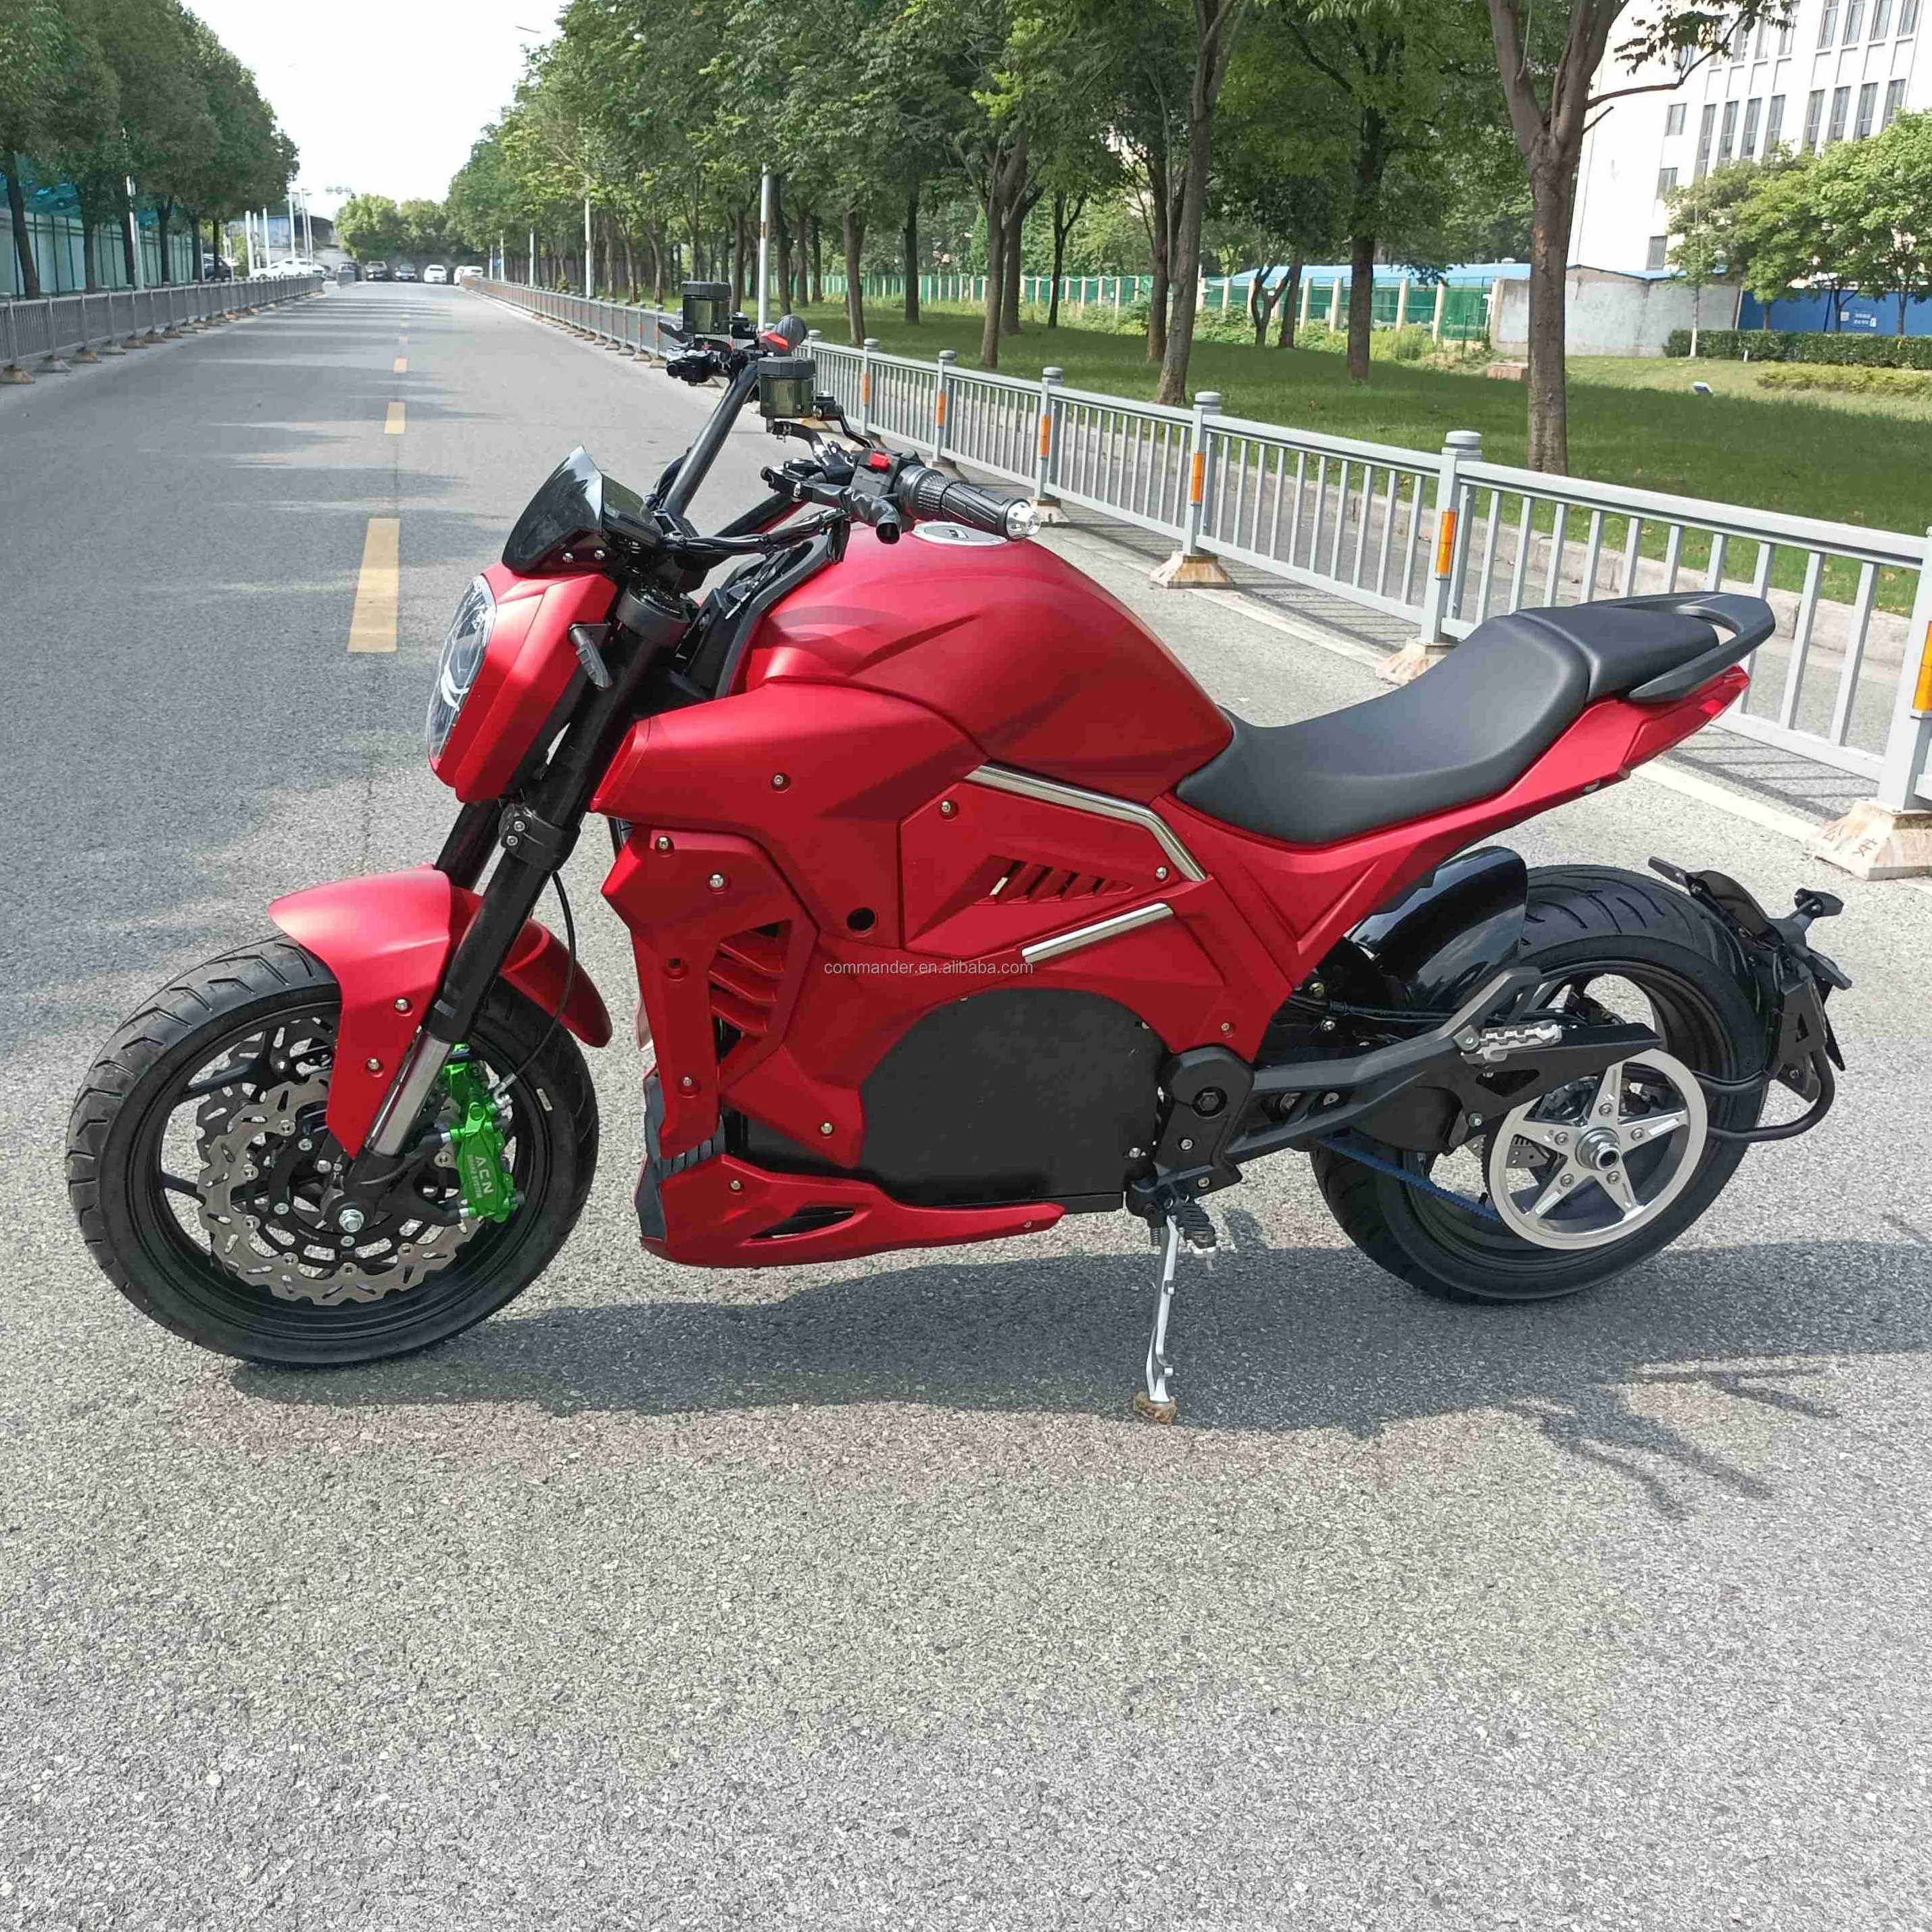 Süper güç 8000w mid motor elektrikli motosiklet yetişkinler için en yüksek hız 150km/saat 93mph en aralığı 300km 186mil